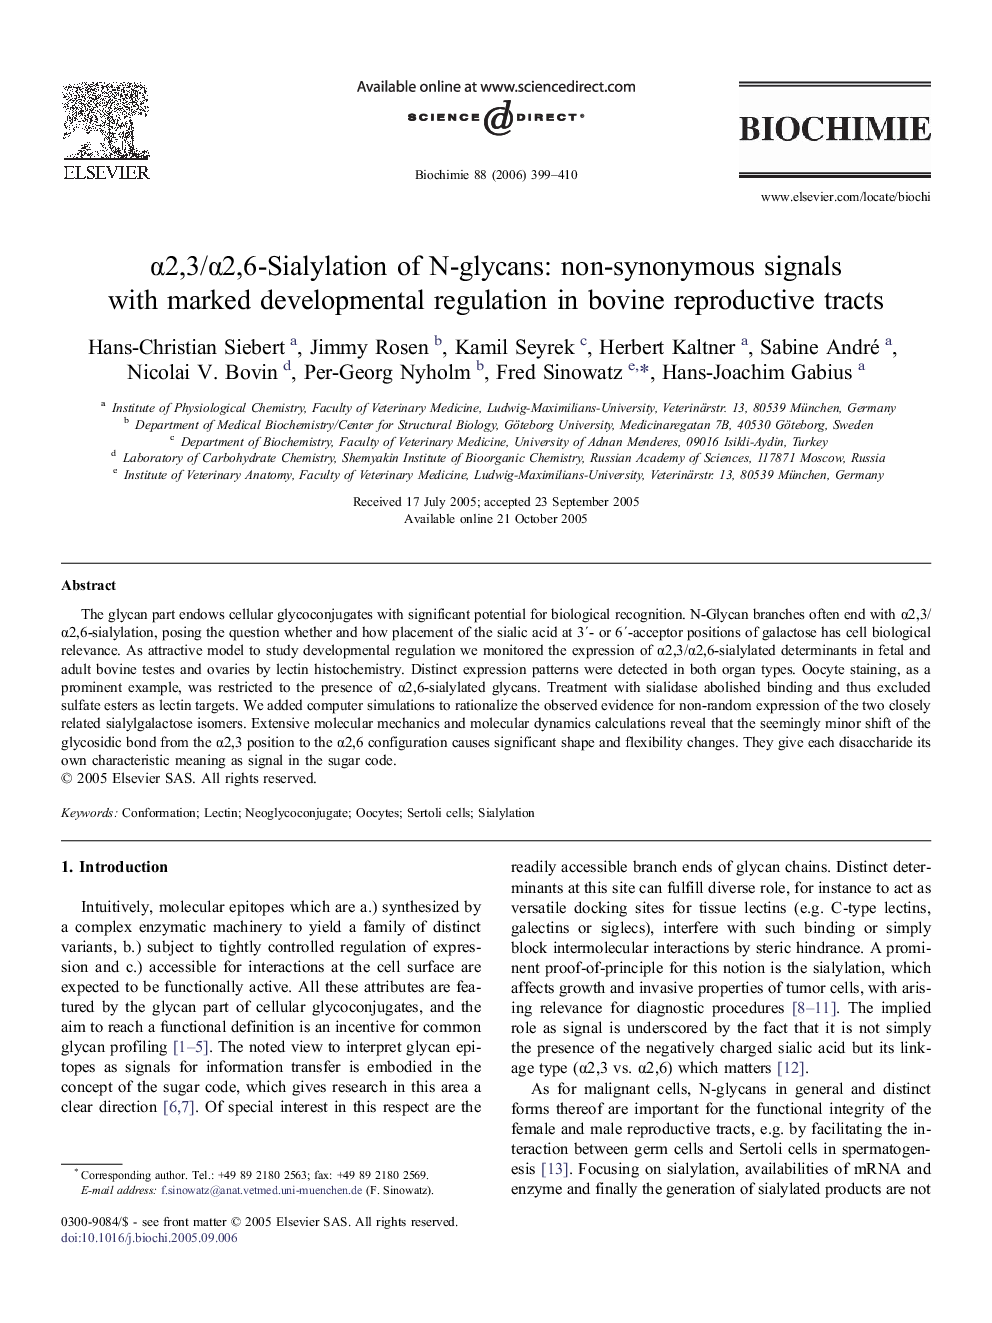 α2,3/α2,6-Sialylation of N-glycans: non-synonymous signals with marked developmental regulation in bovine reproductive tracts